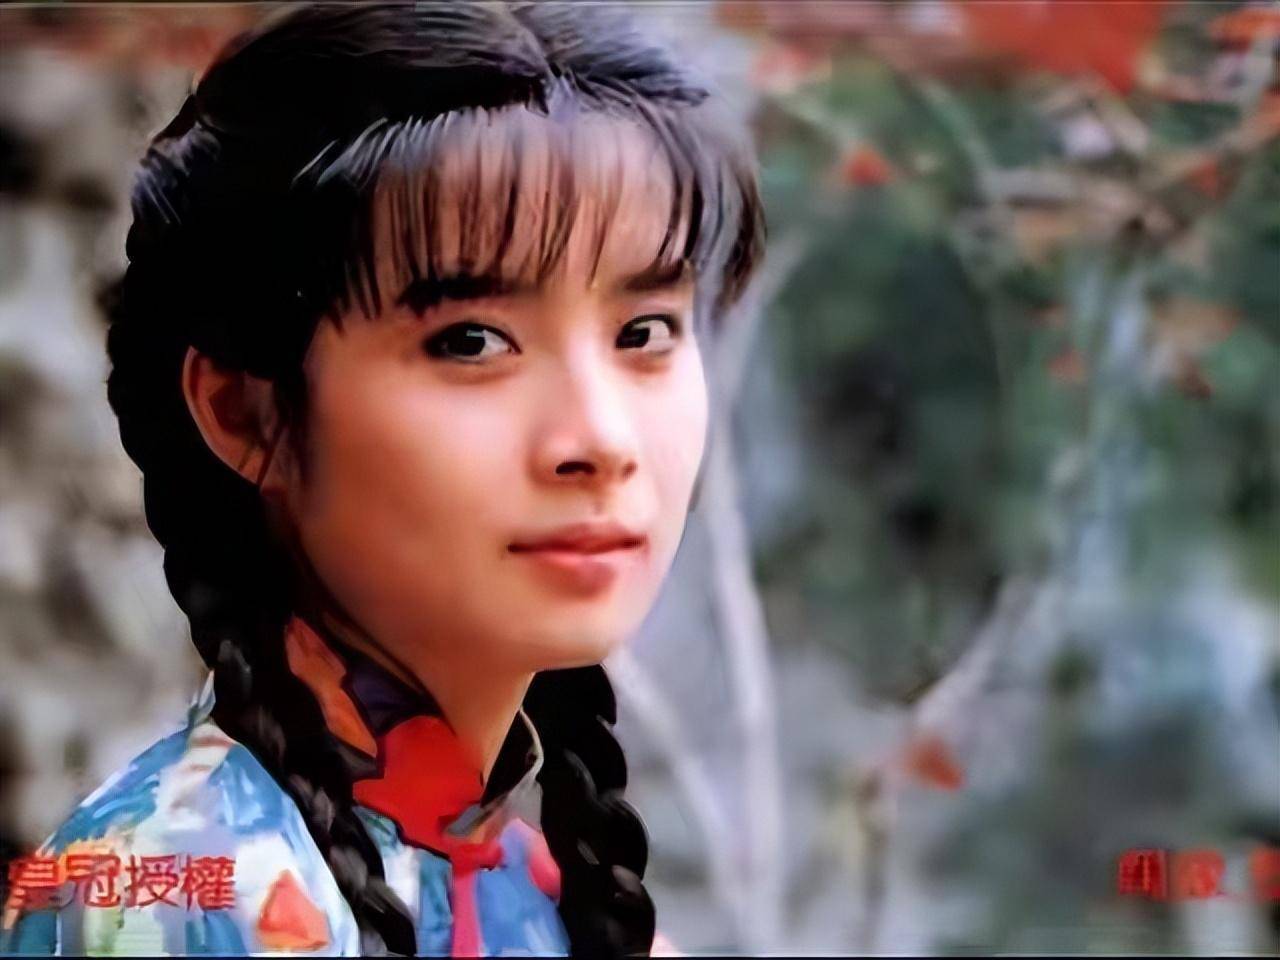 电视剧《青青河边草》里面的女主角是台湾演员岳翎,作为琼瑶的御用